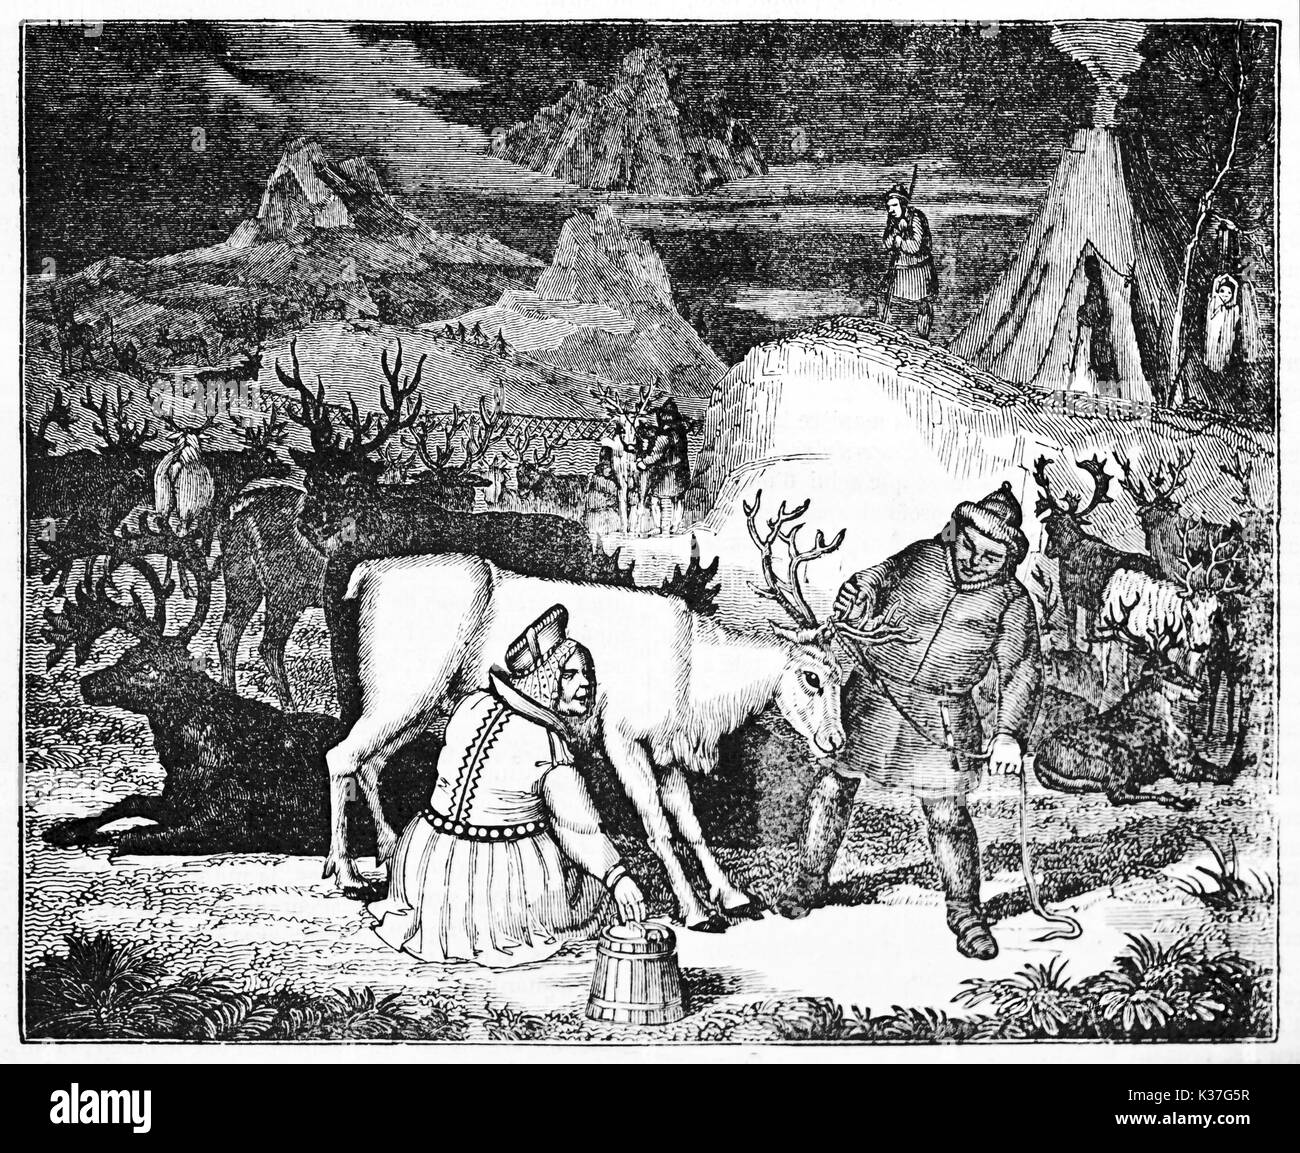 Ancien pasteur traite a Rennes dans un élevage de rennes. Vieille Illustration d'auteur non identifié, publié le Magasin Pittoresque, Paris, 1834 Banque D'Images